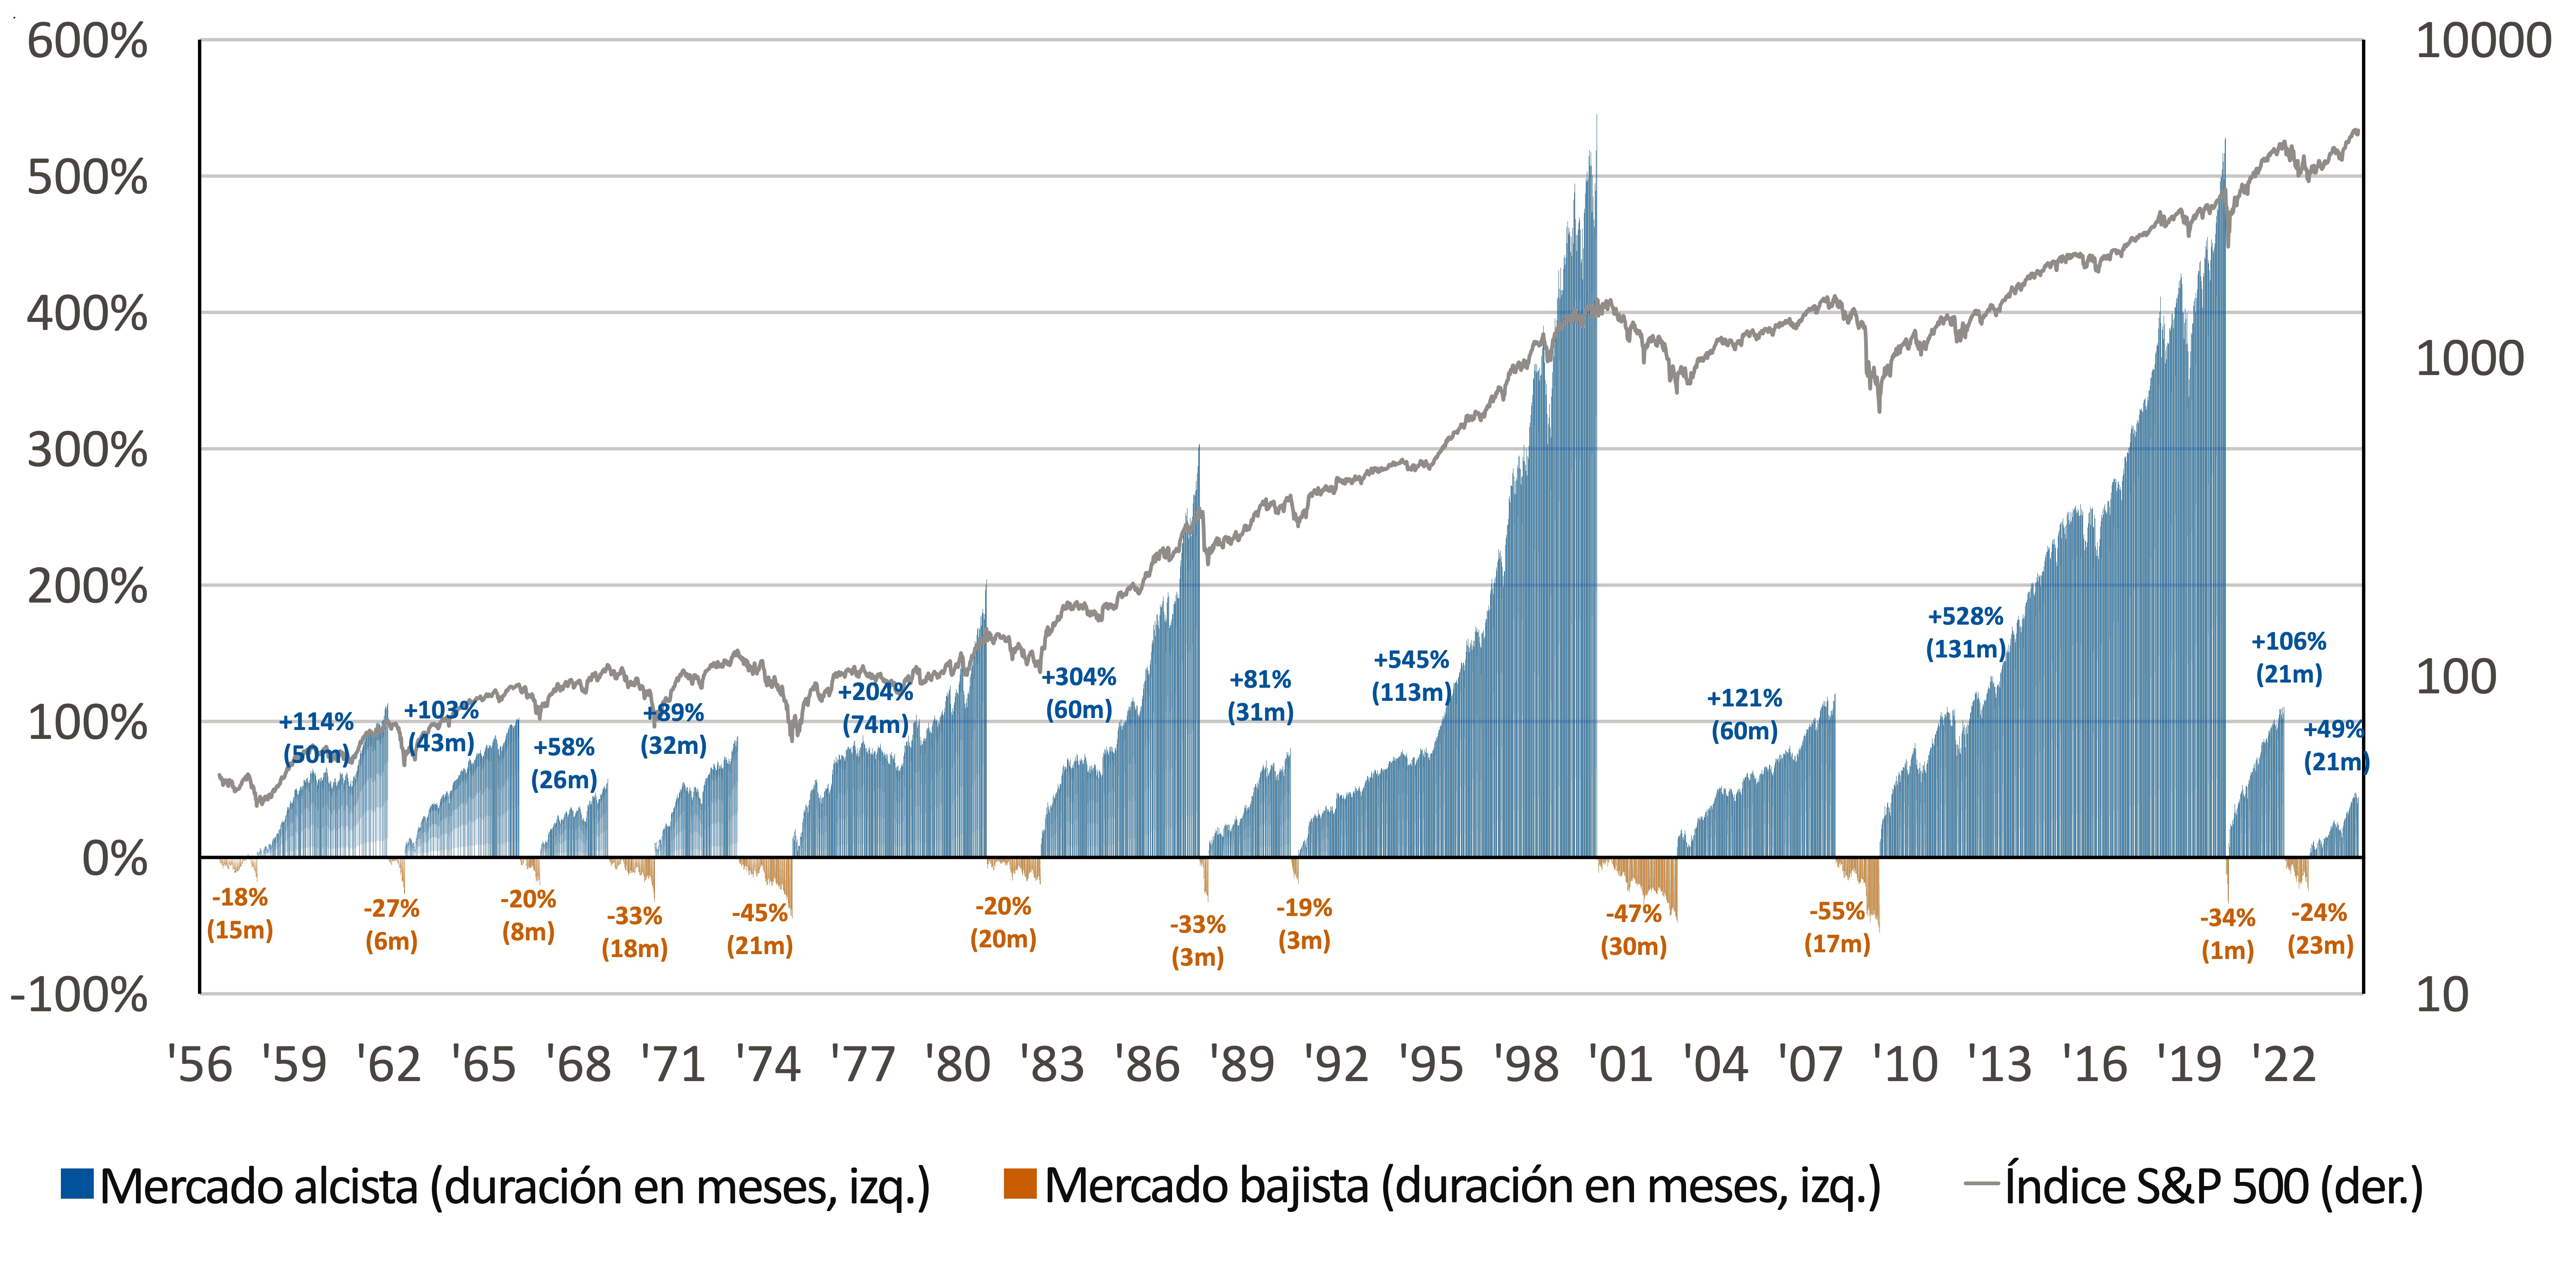 Este gráfico muestra la duración y retornos de los mercados alcistas y bajistas entre 1956 y 2024.